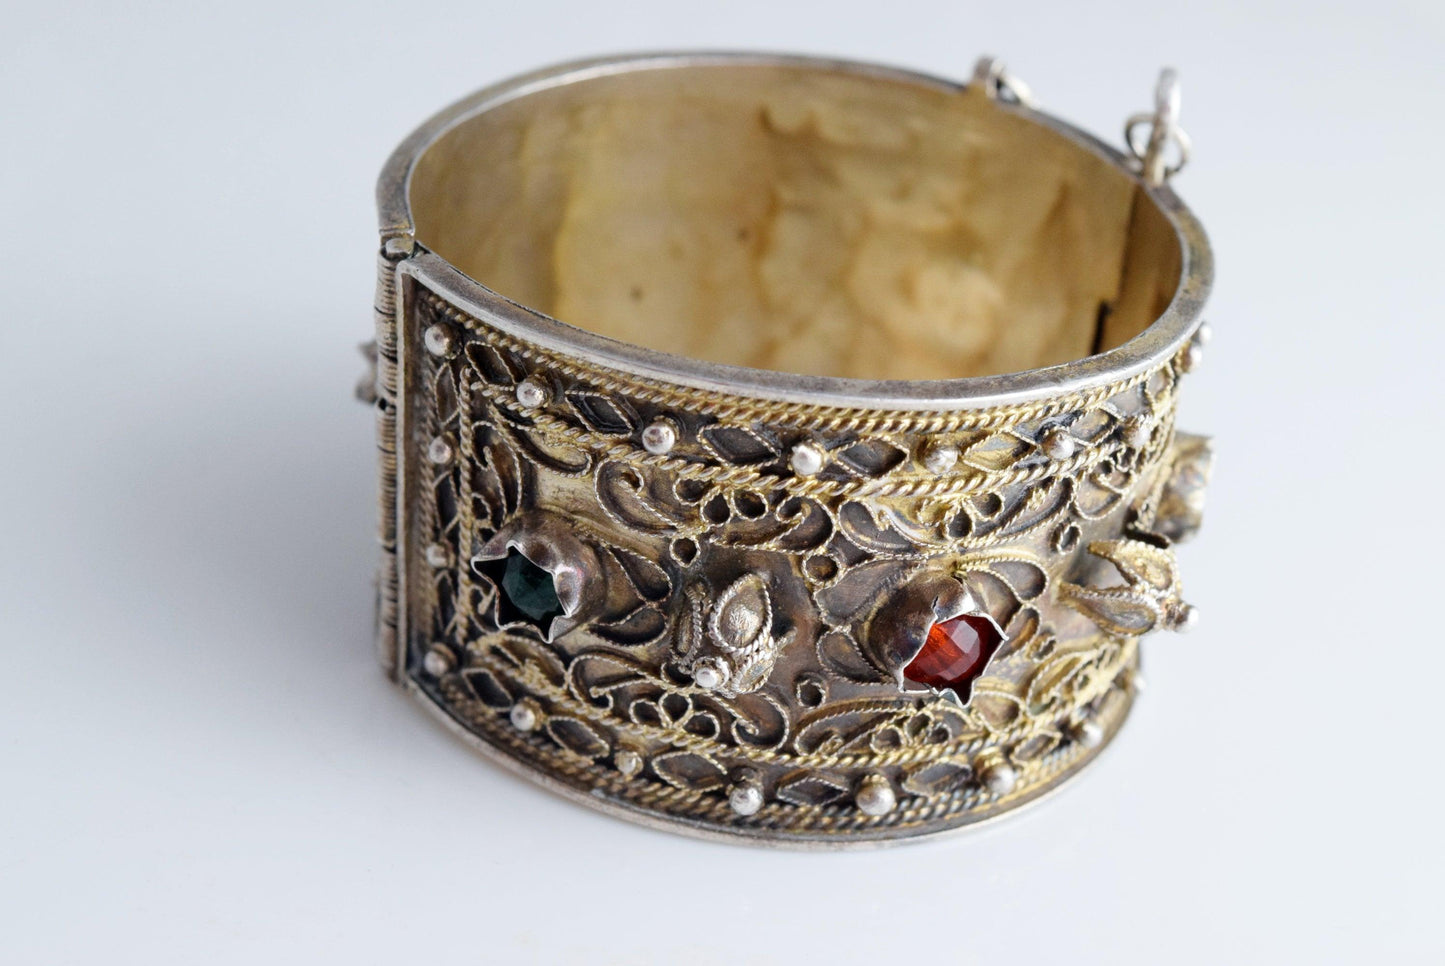 tunisian gold gilt bracelet